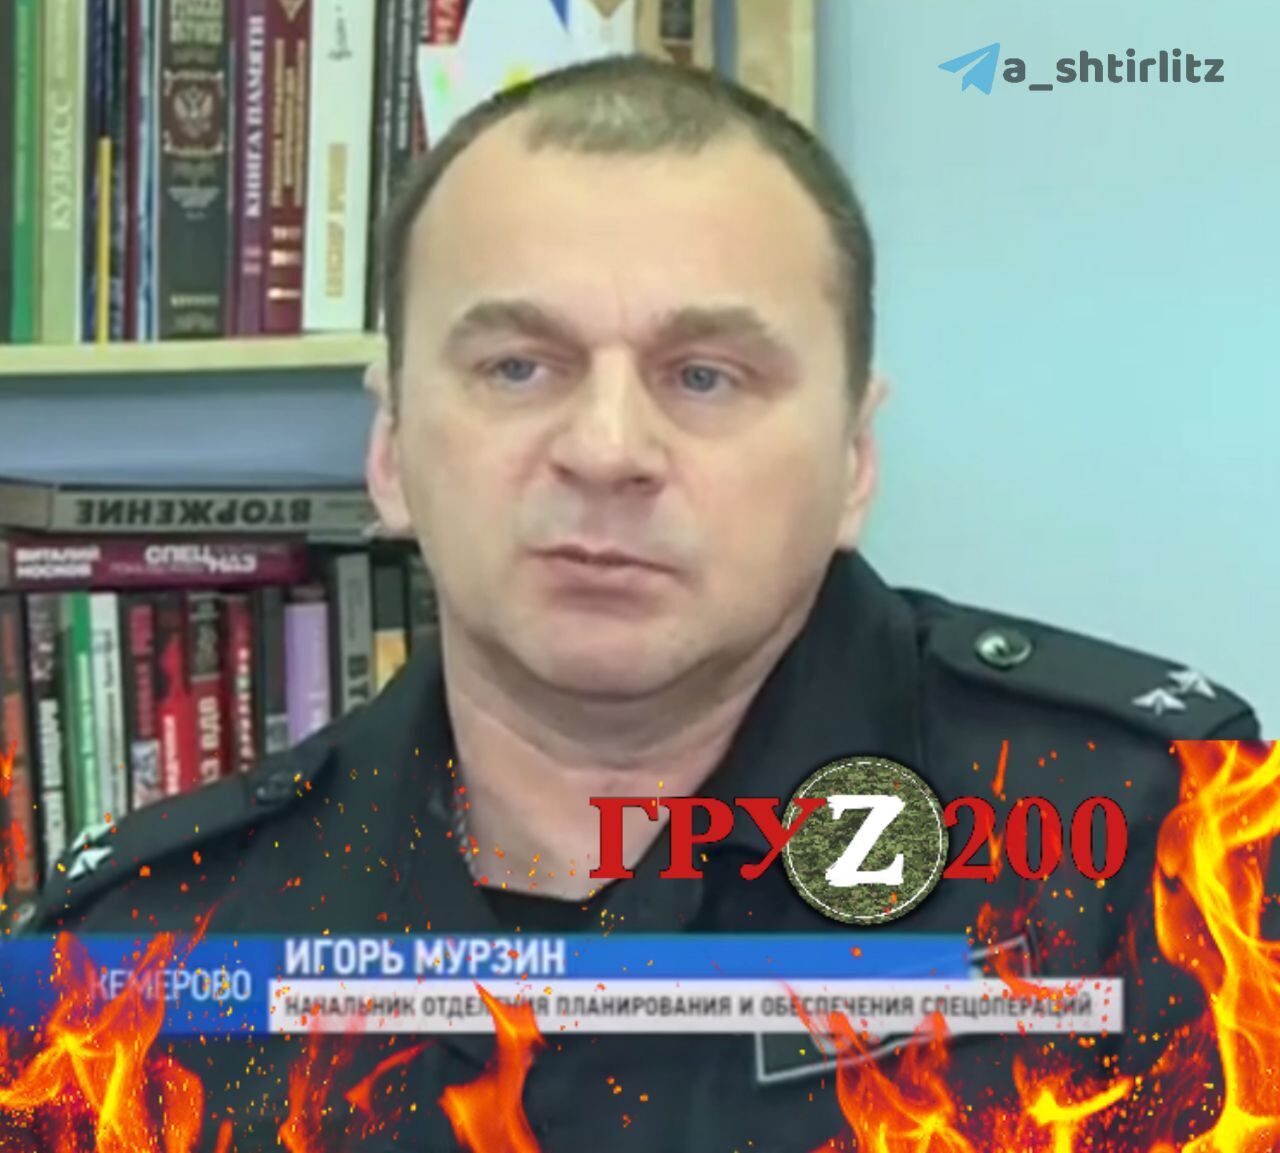 Оккупант Игорь Мурзин был ликвидирован на второй день вторжения армии РФ в Украину